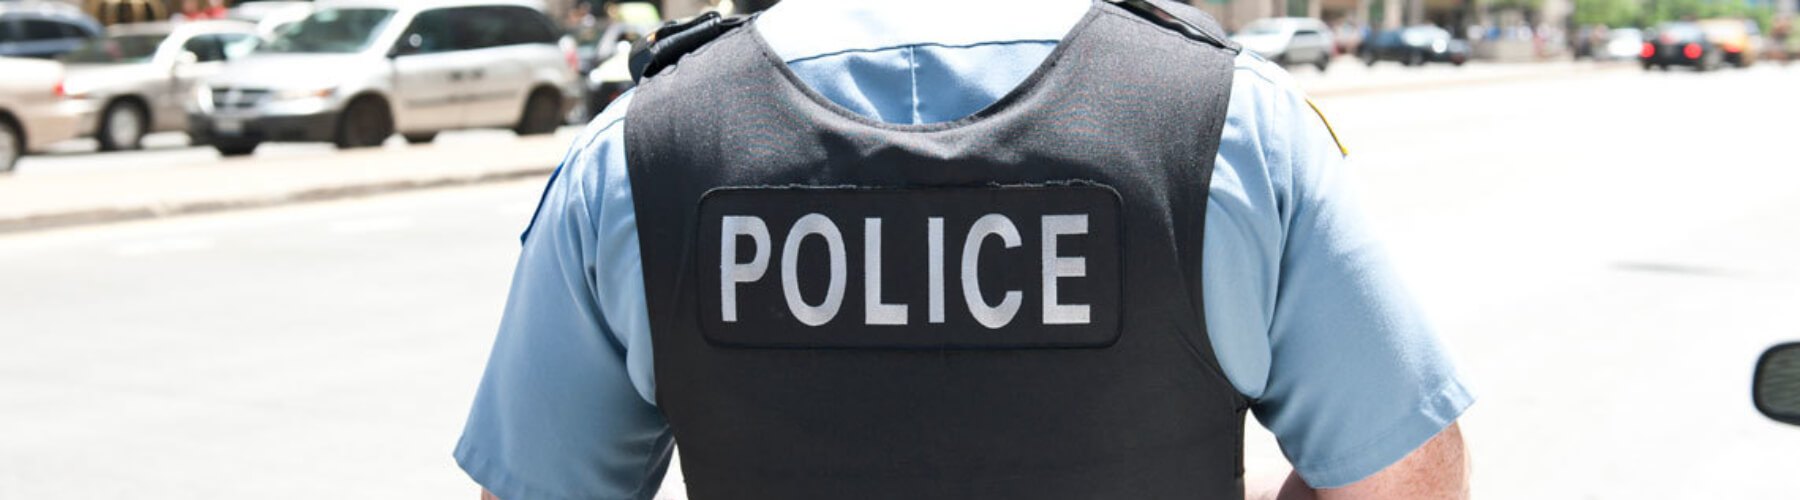 Police officer wearing bulletproof vest